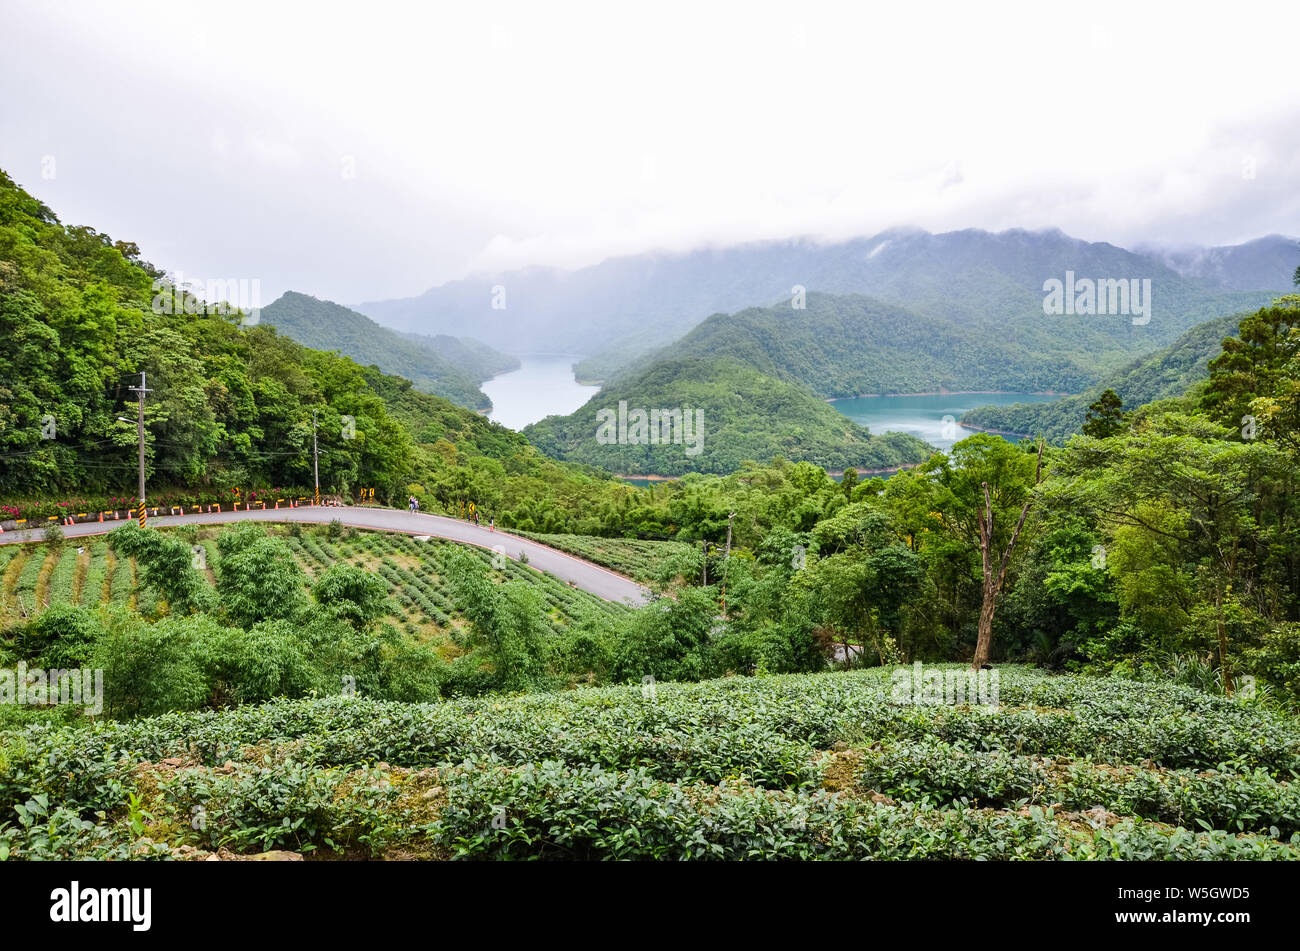 Tausend Insel See umgeben von Teeplantagen und tropischen Wald, Taiwan, Asien. Moody Landschaft. Taiwanesische Natur. Reiseziele. Oolong Tee Plantage. Stockfoto